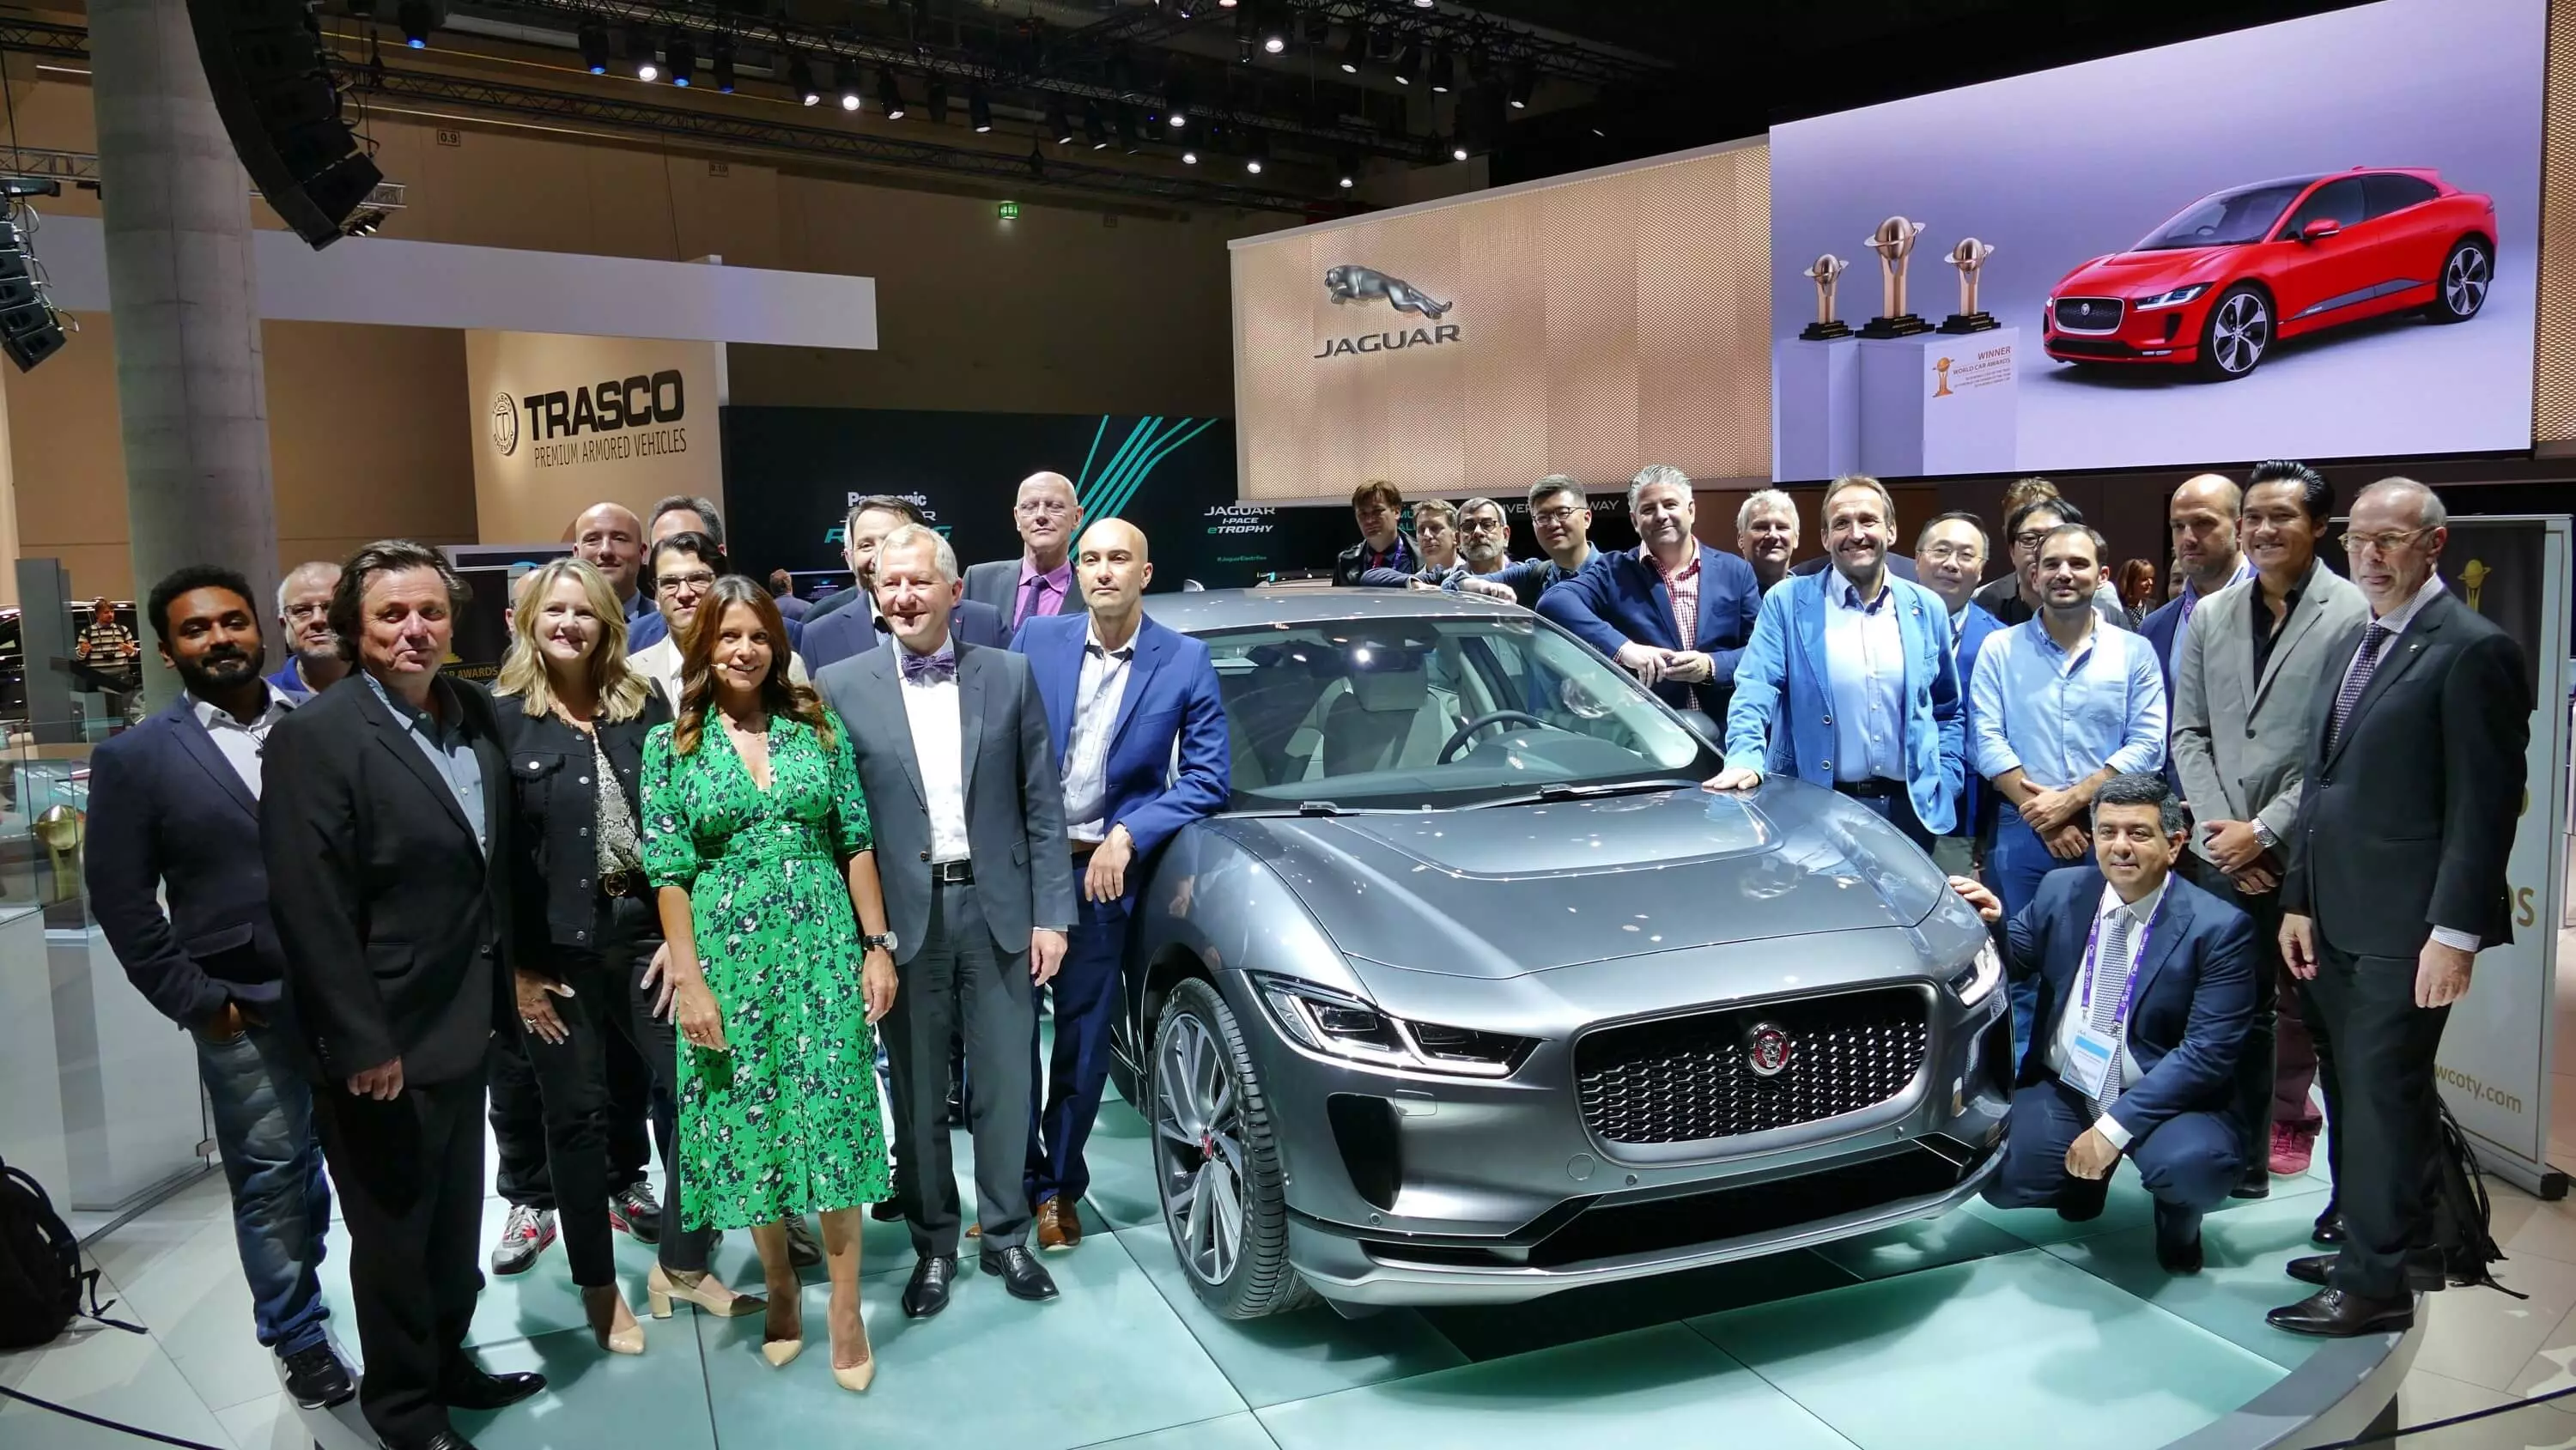 Jurats dels World Car Awards, Frankfurt 2019